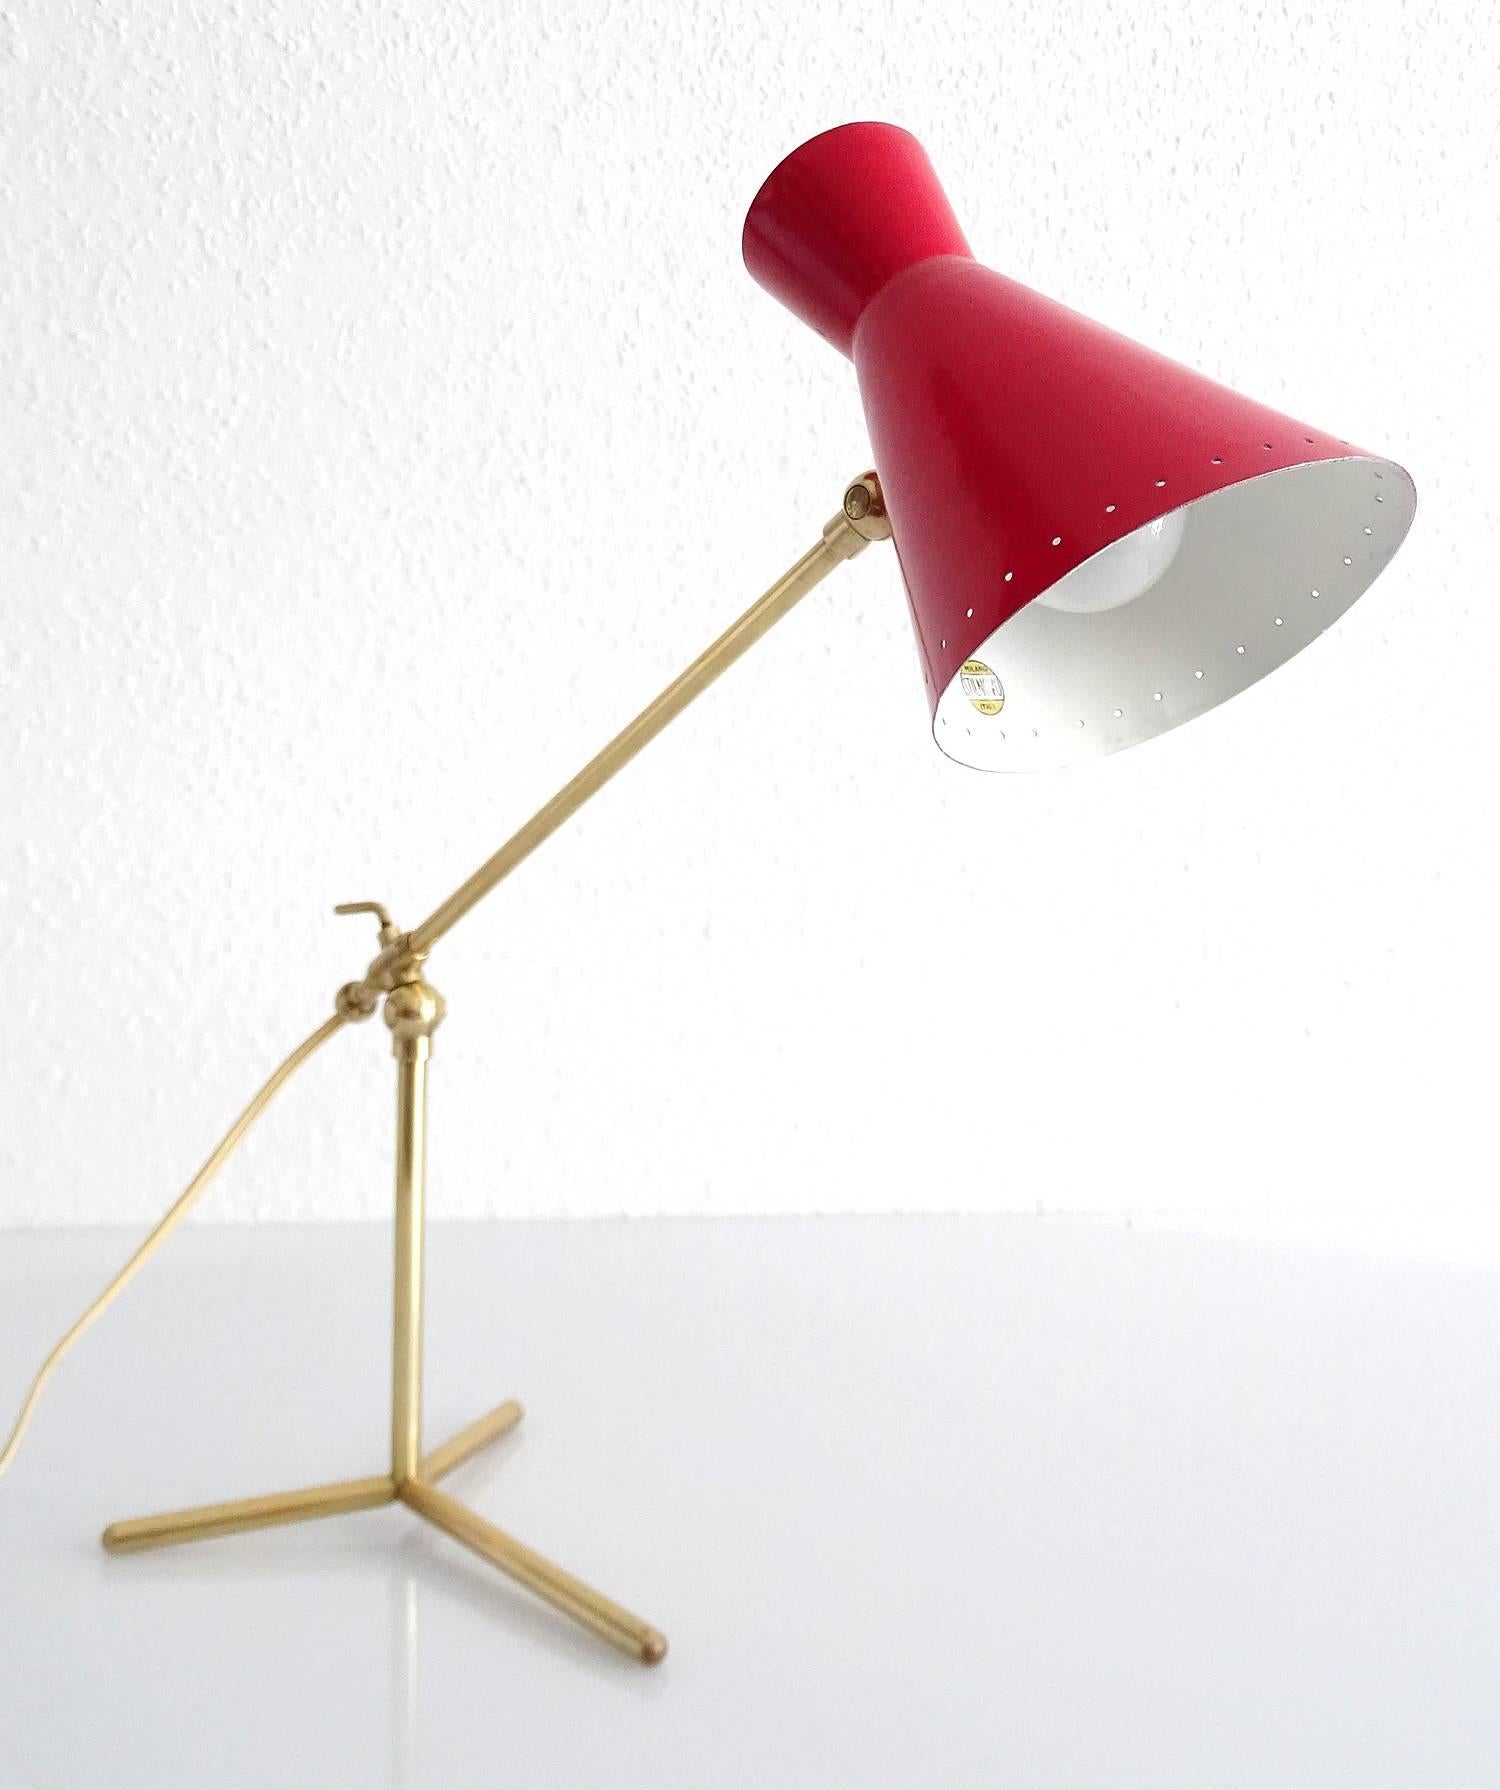 Mid-20th Century Stilnovo Design Desk Lamp Brass Modernist Design 50s Mid Century Modern Italian